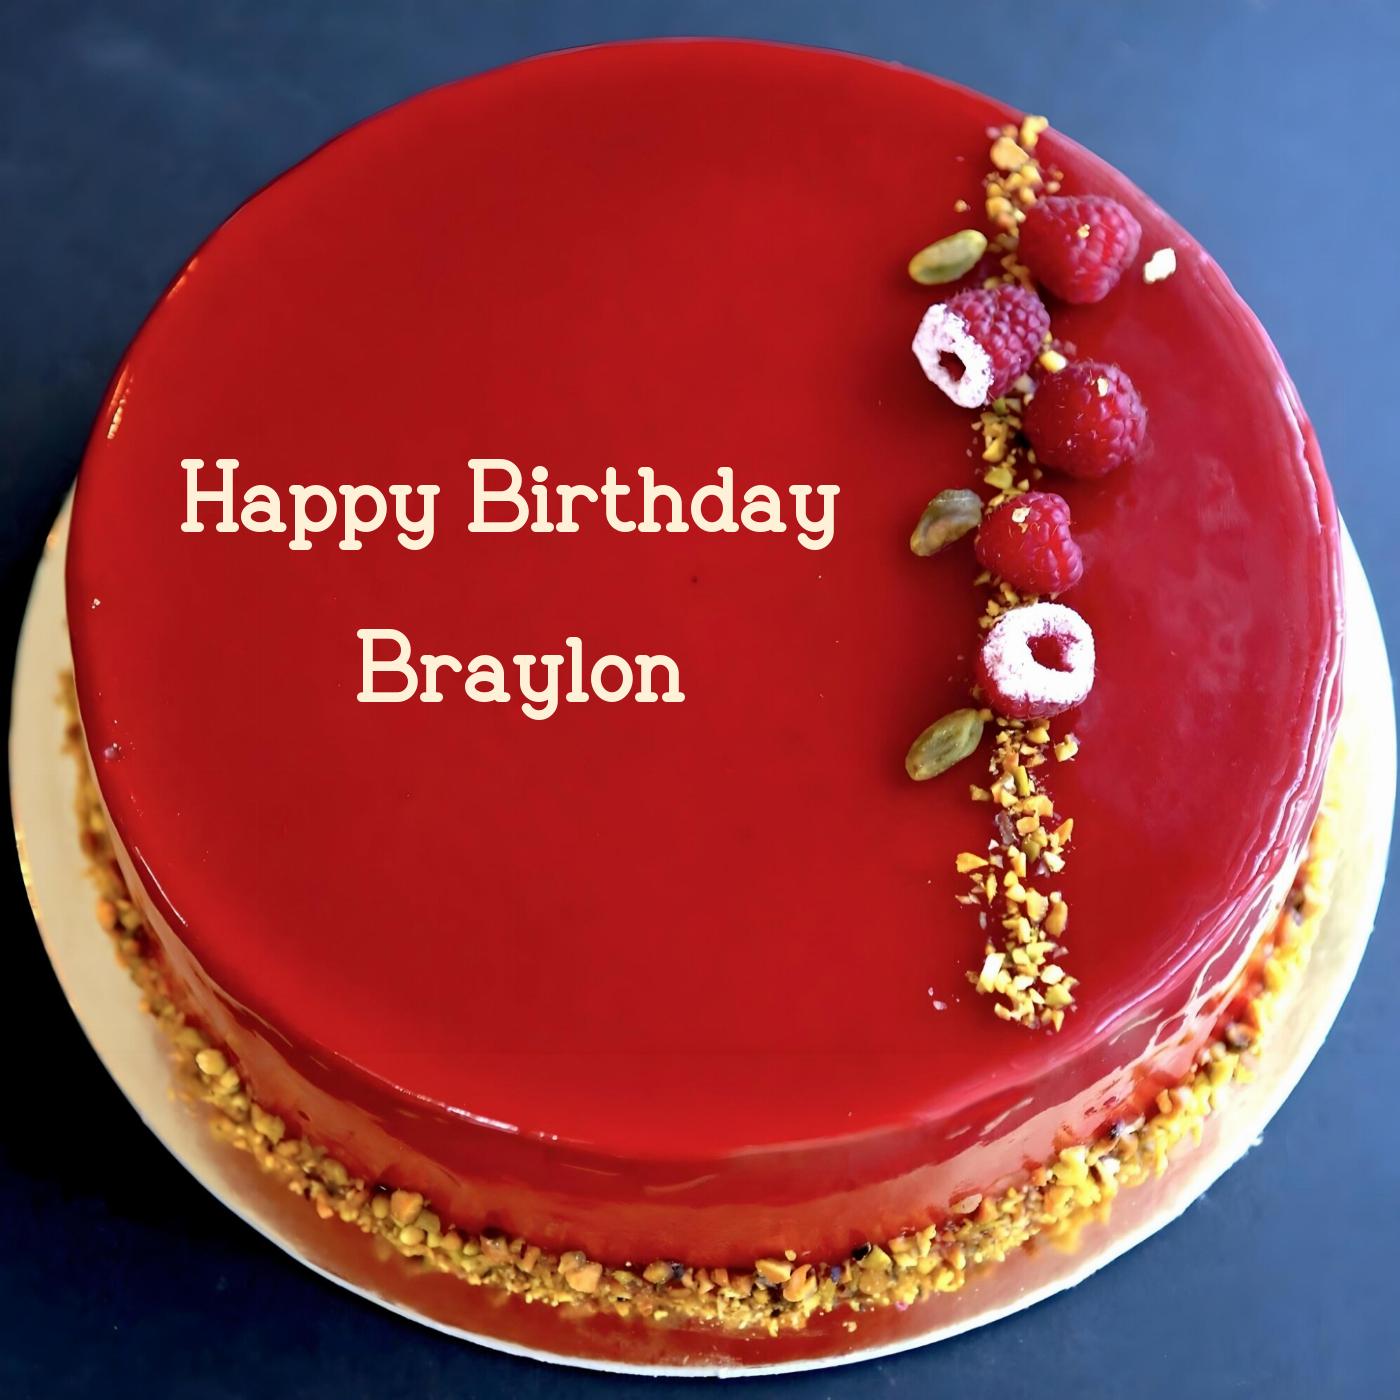 Happy Birthday Braylon Red Raspberry Cake